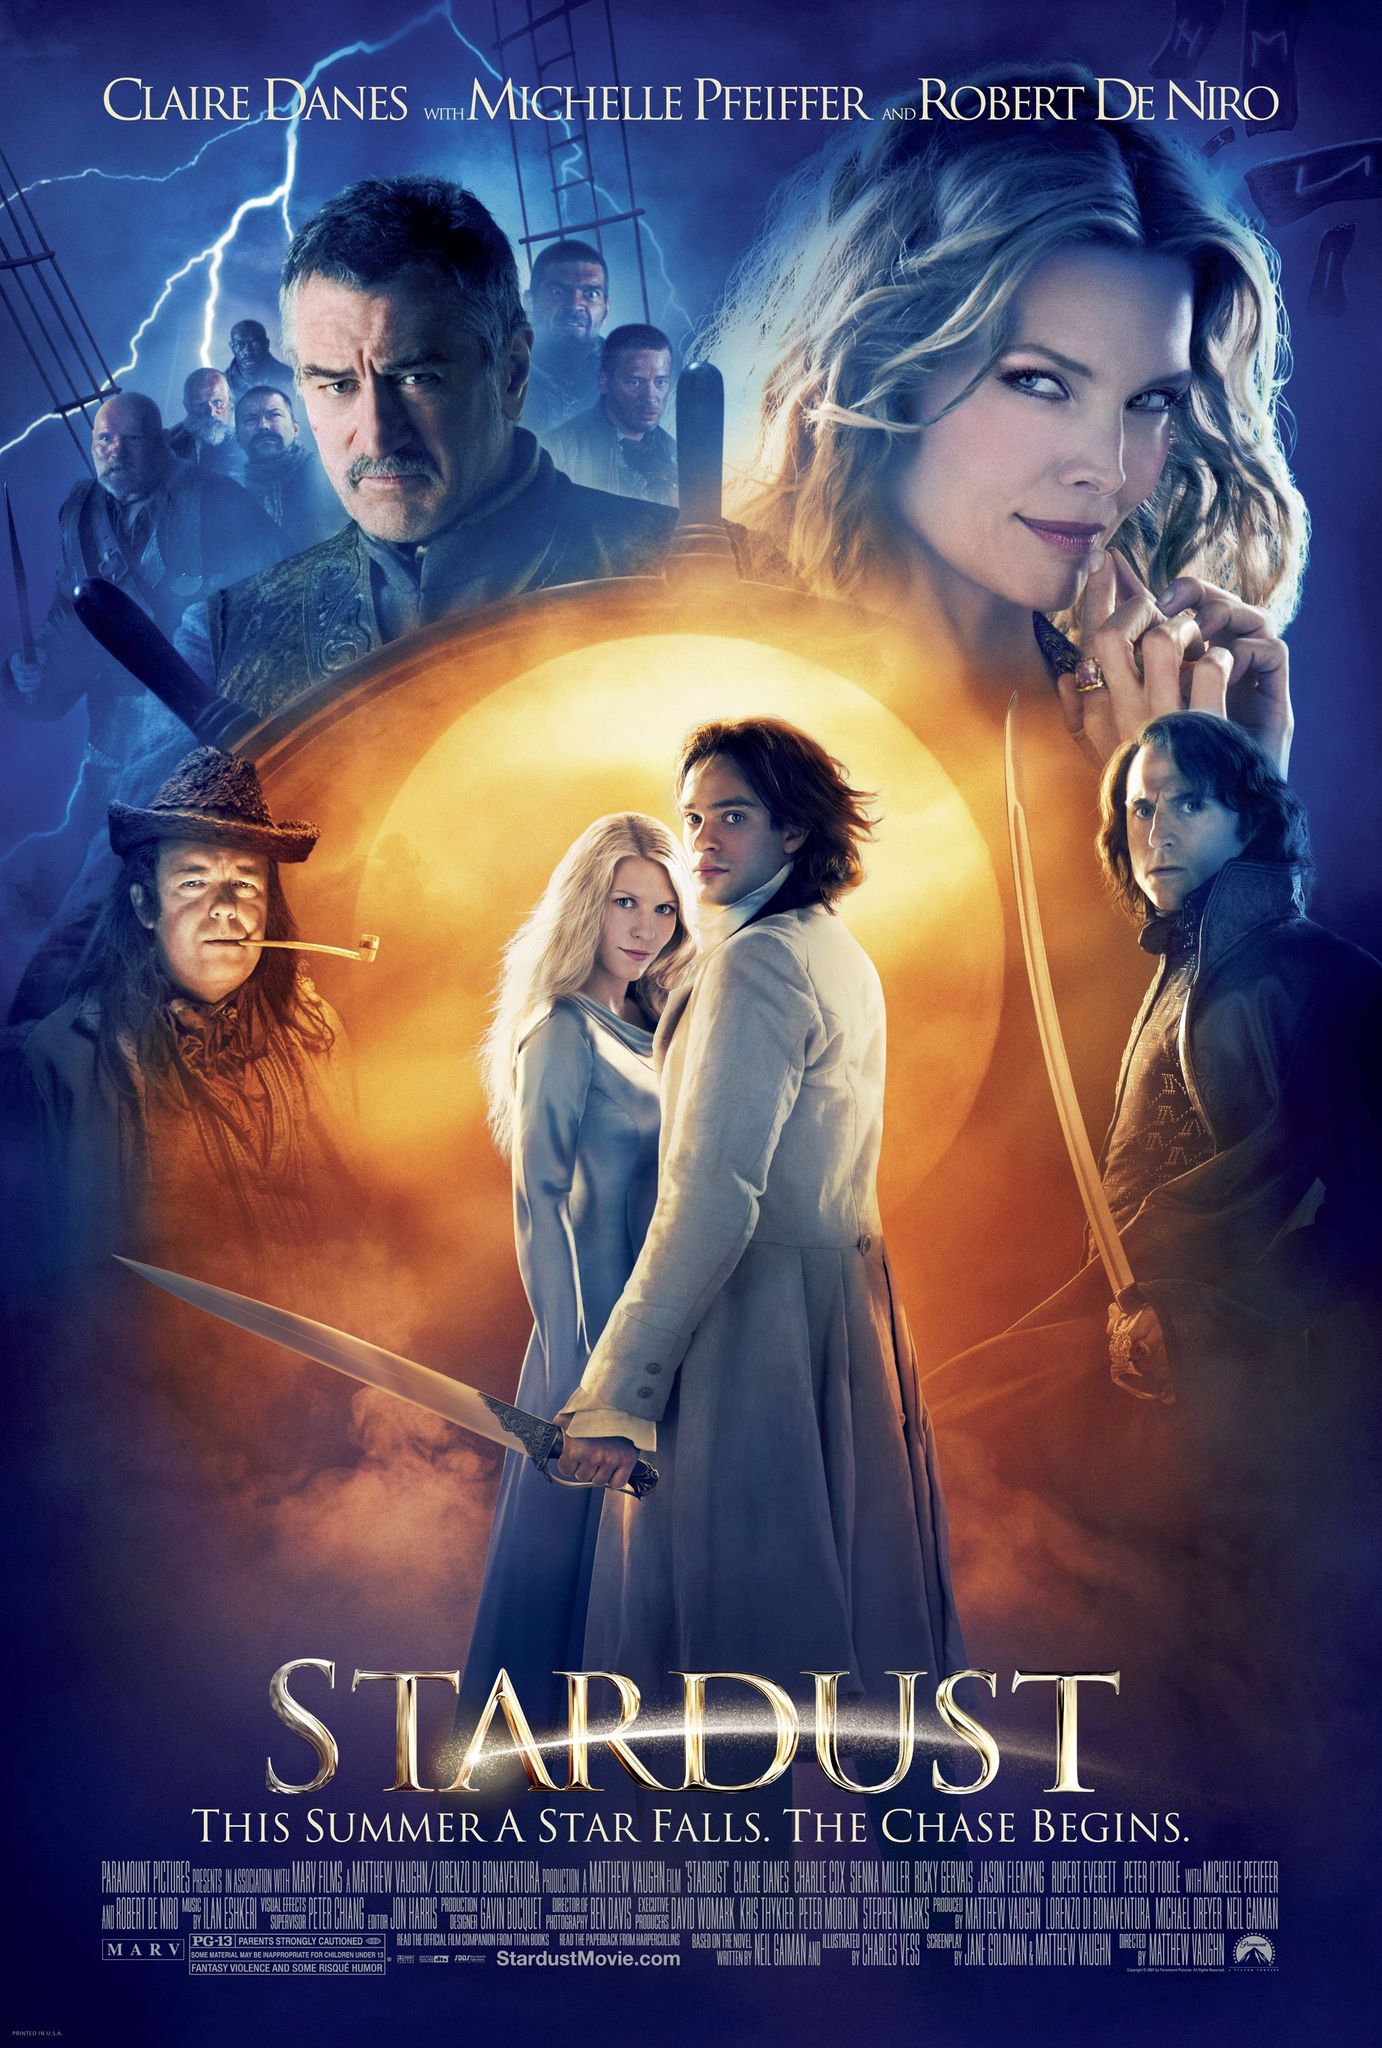 ดูหนังออนไลน์ฟรี Stardust (2007) ศึกมหัศจรรย์ ปาฏิหาริย์รักจากดวงดาว